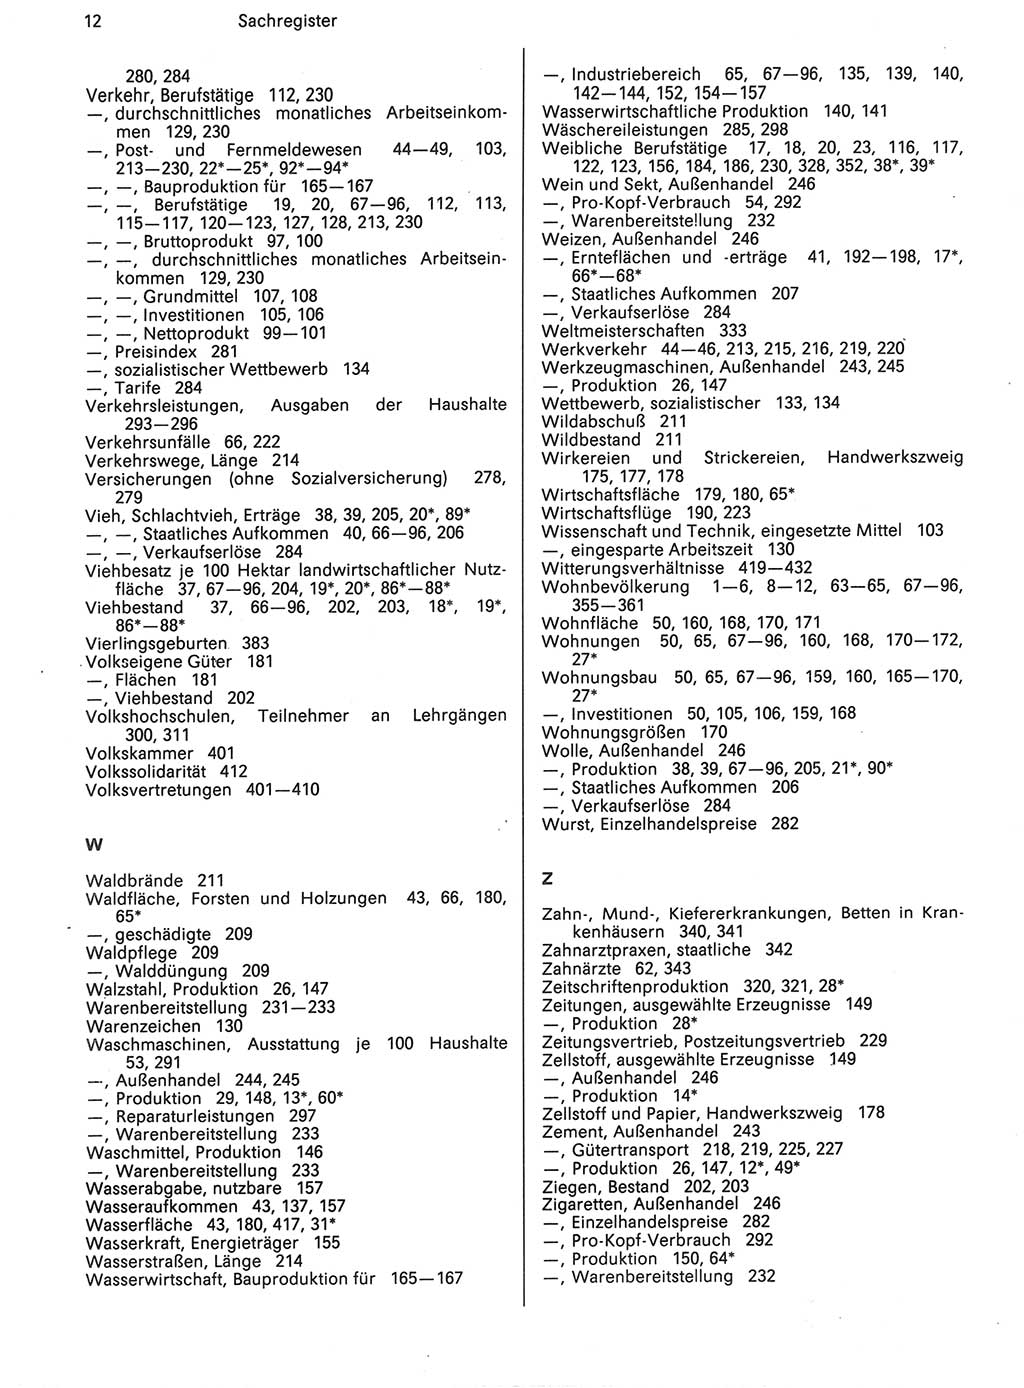 Statistisches Jahrbuch der Deutschen Demokratischen Republik (DDR) 1988, Seite 12 (Stat. Jb. DDR 1988, S. 12)